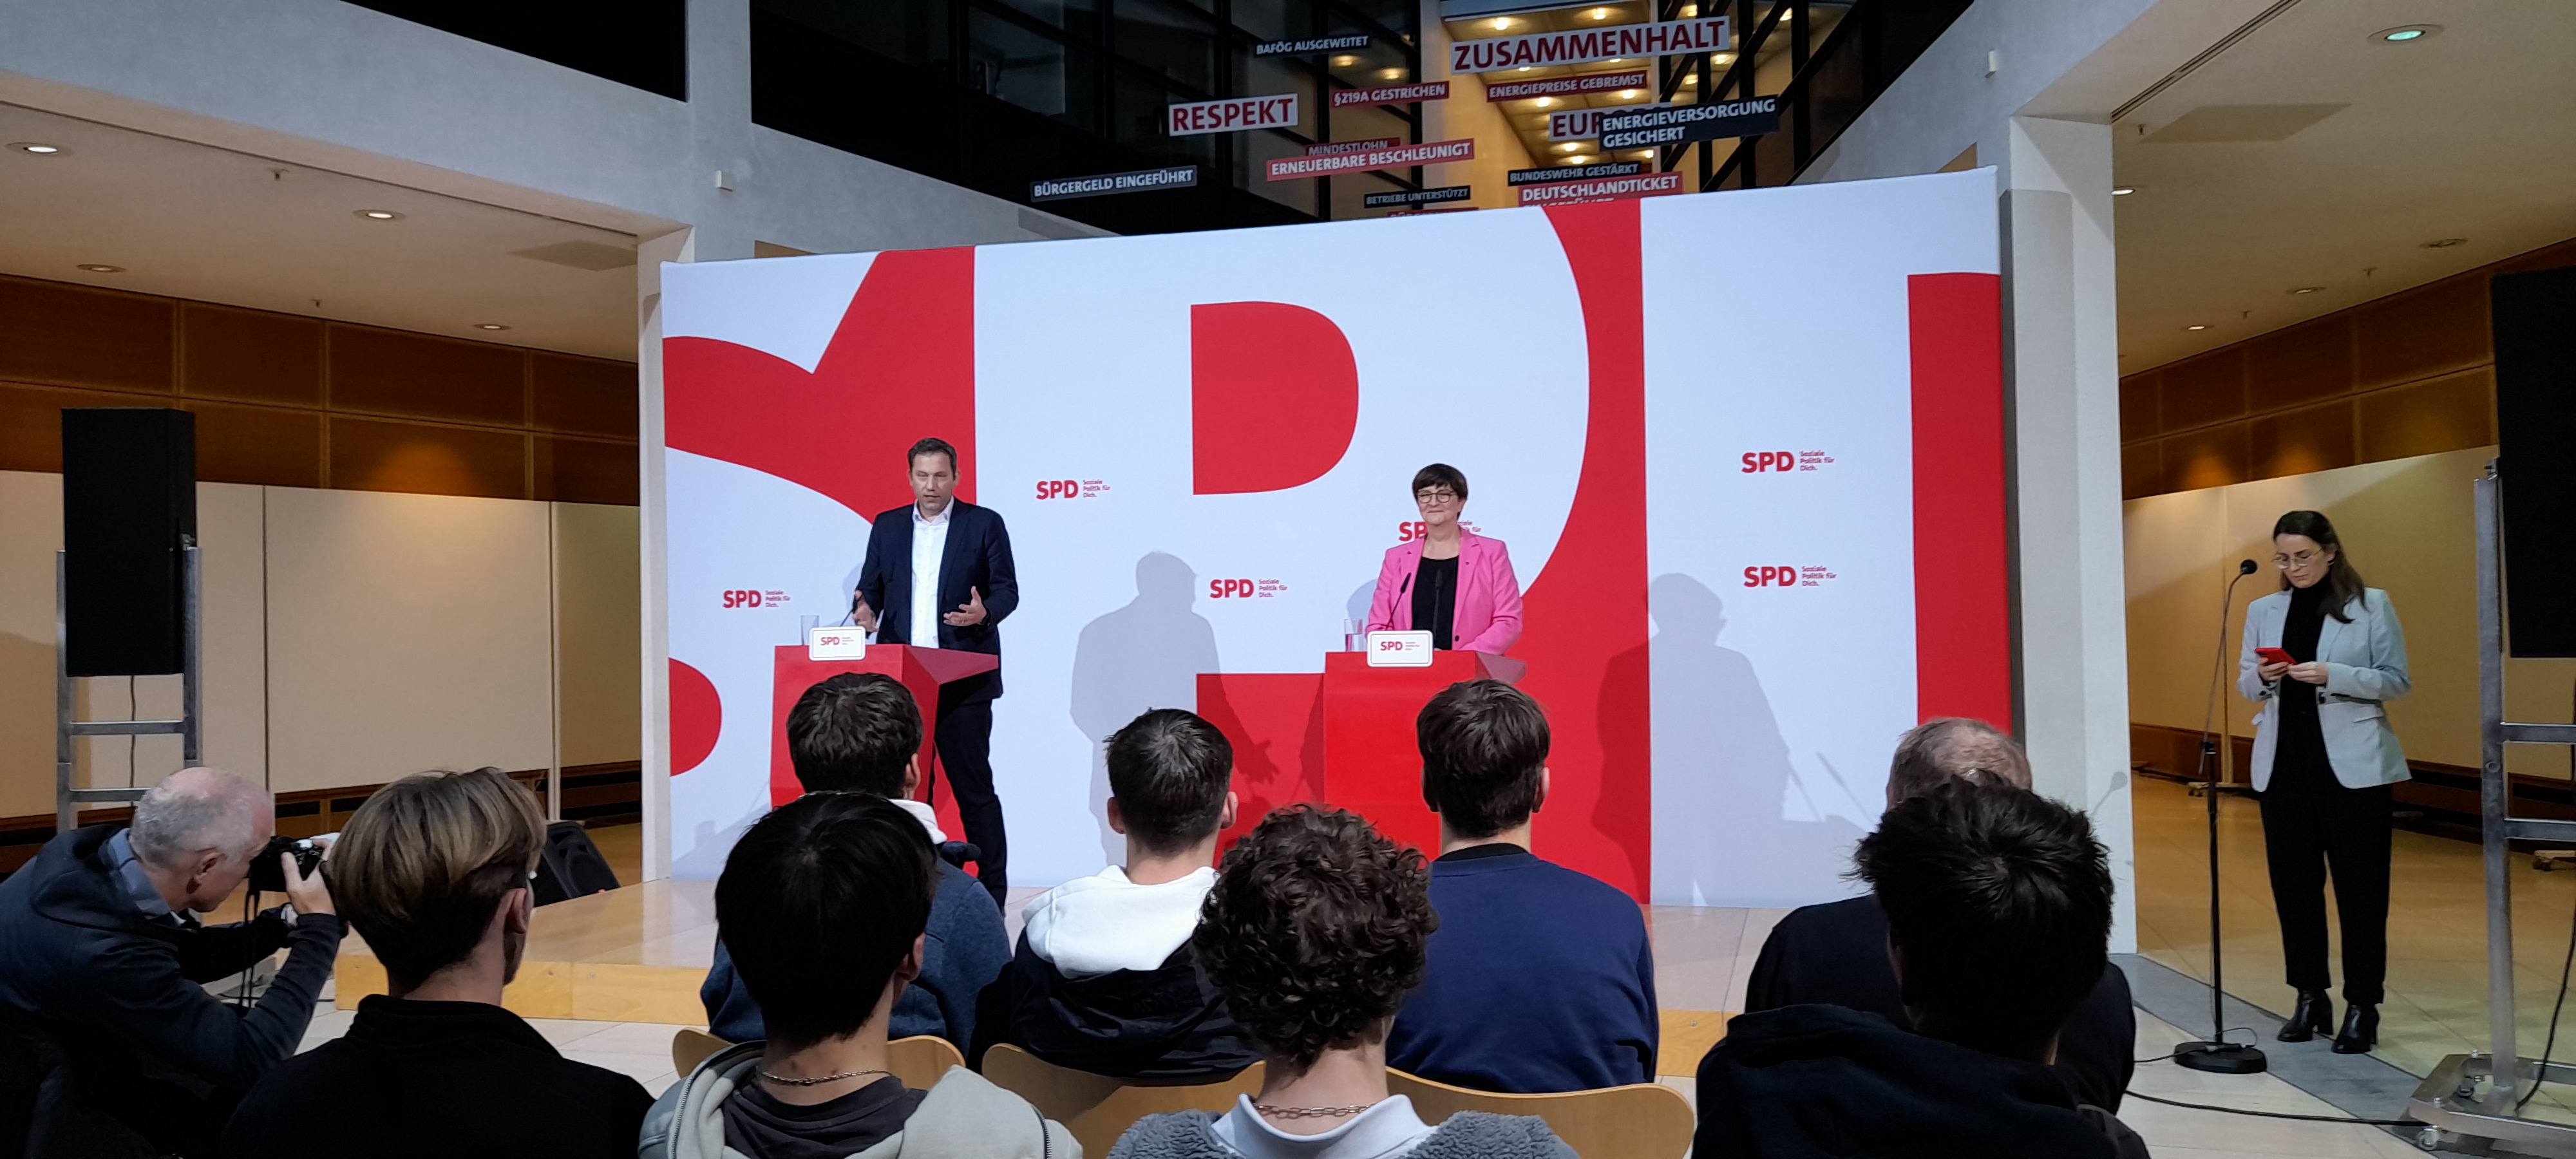 Treten beim Parteitag wieder an: die SPD-Vorsitzenden Lars Klingbeil und Saskia Esken am 13. November im Willy-Brandt-Haus.